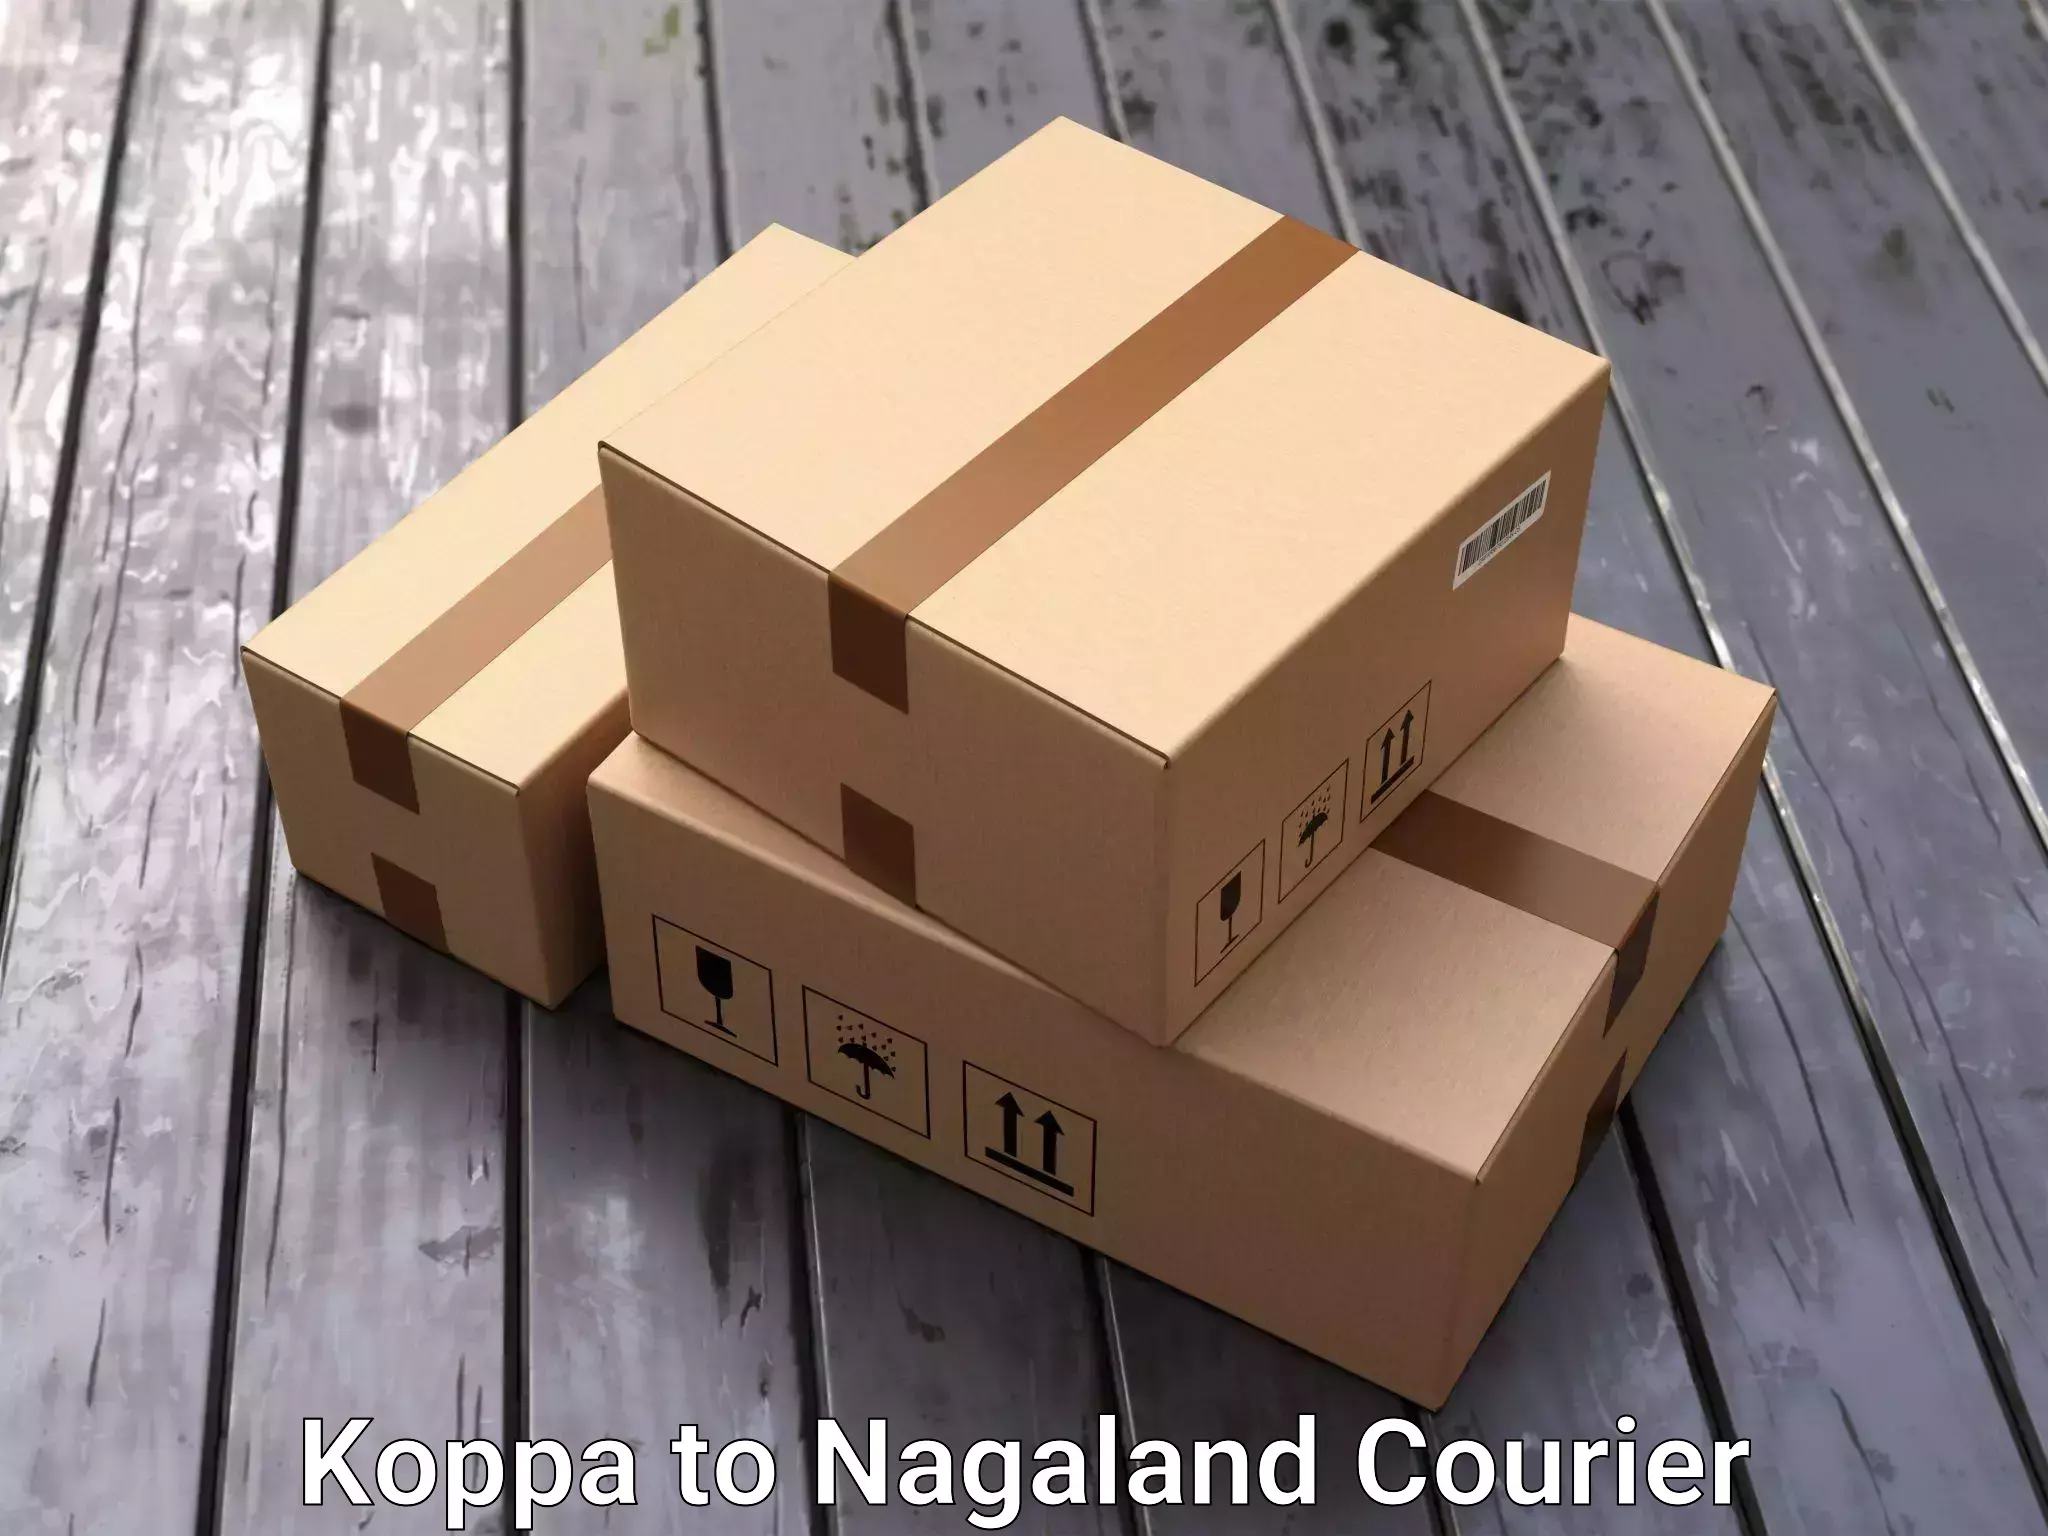 Furniture transport experts Koppa to Longleng